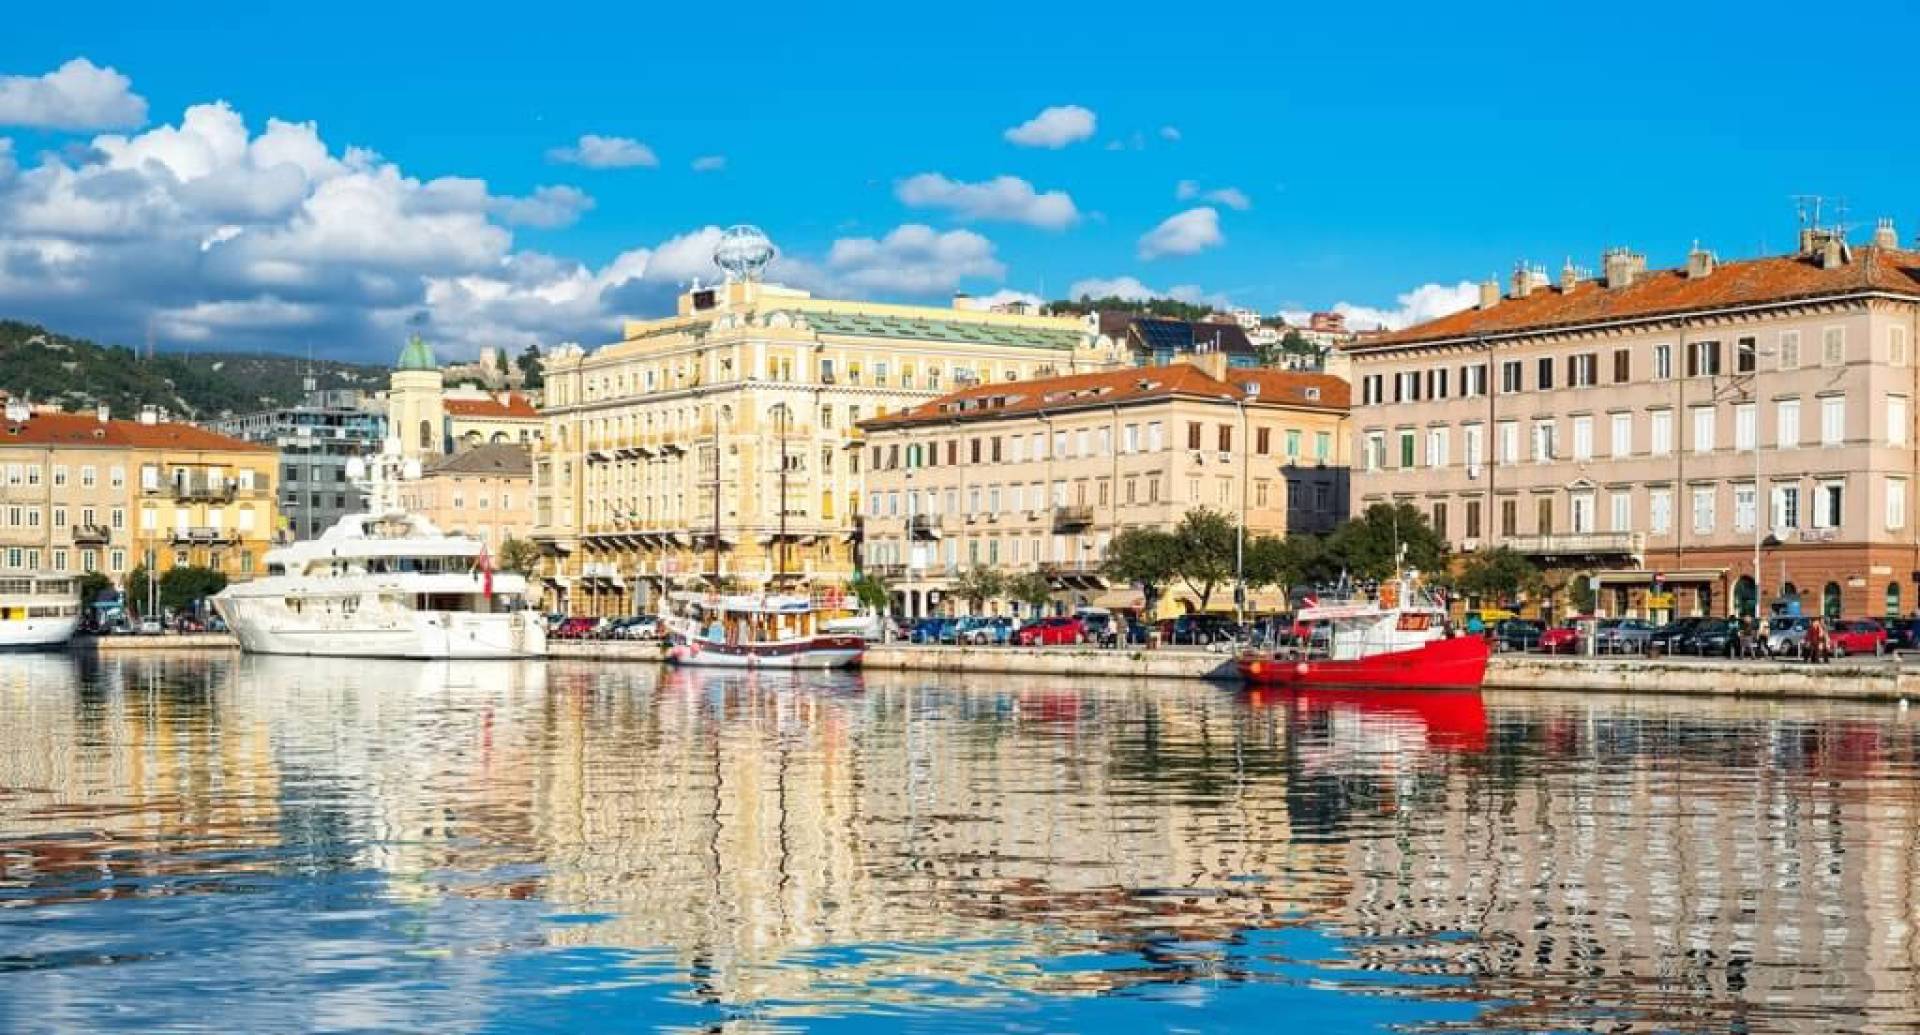 Why visit Rijeka?